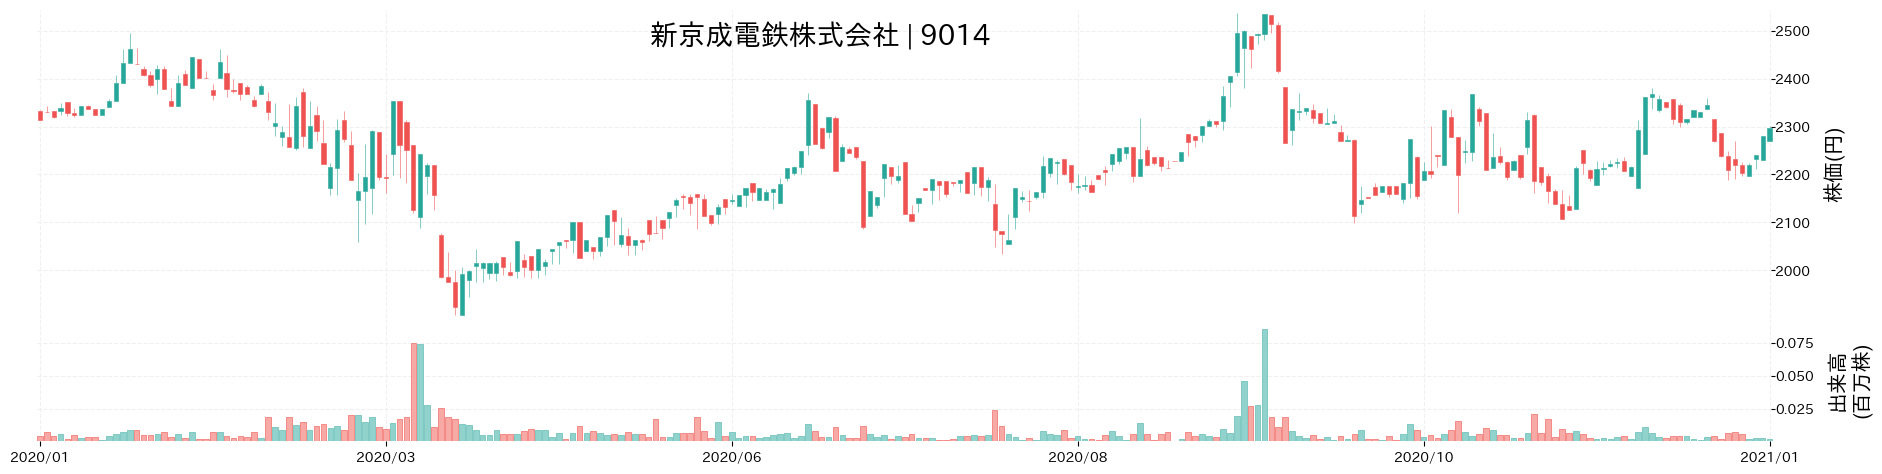 新京成電鉄の株価推移(2020)